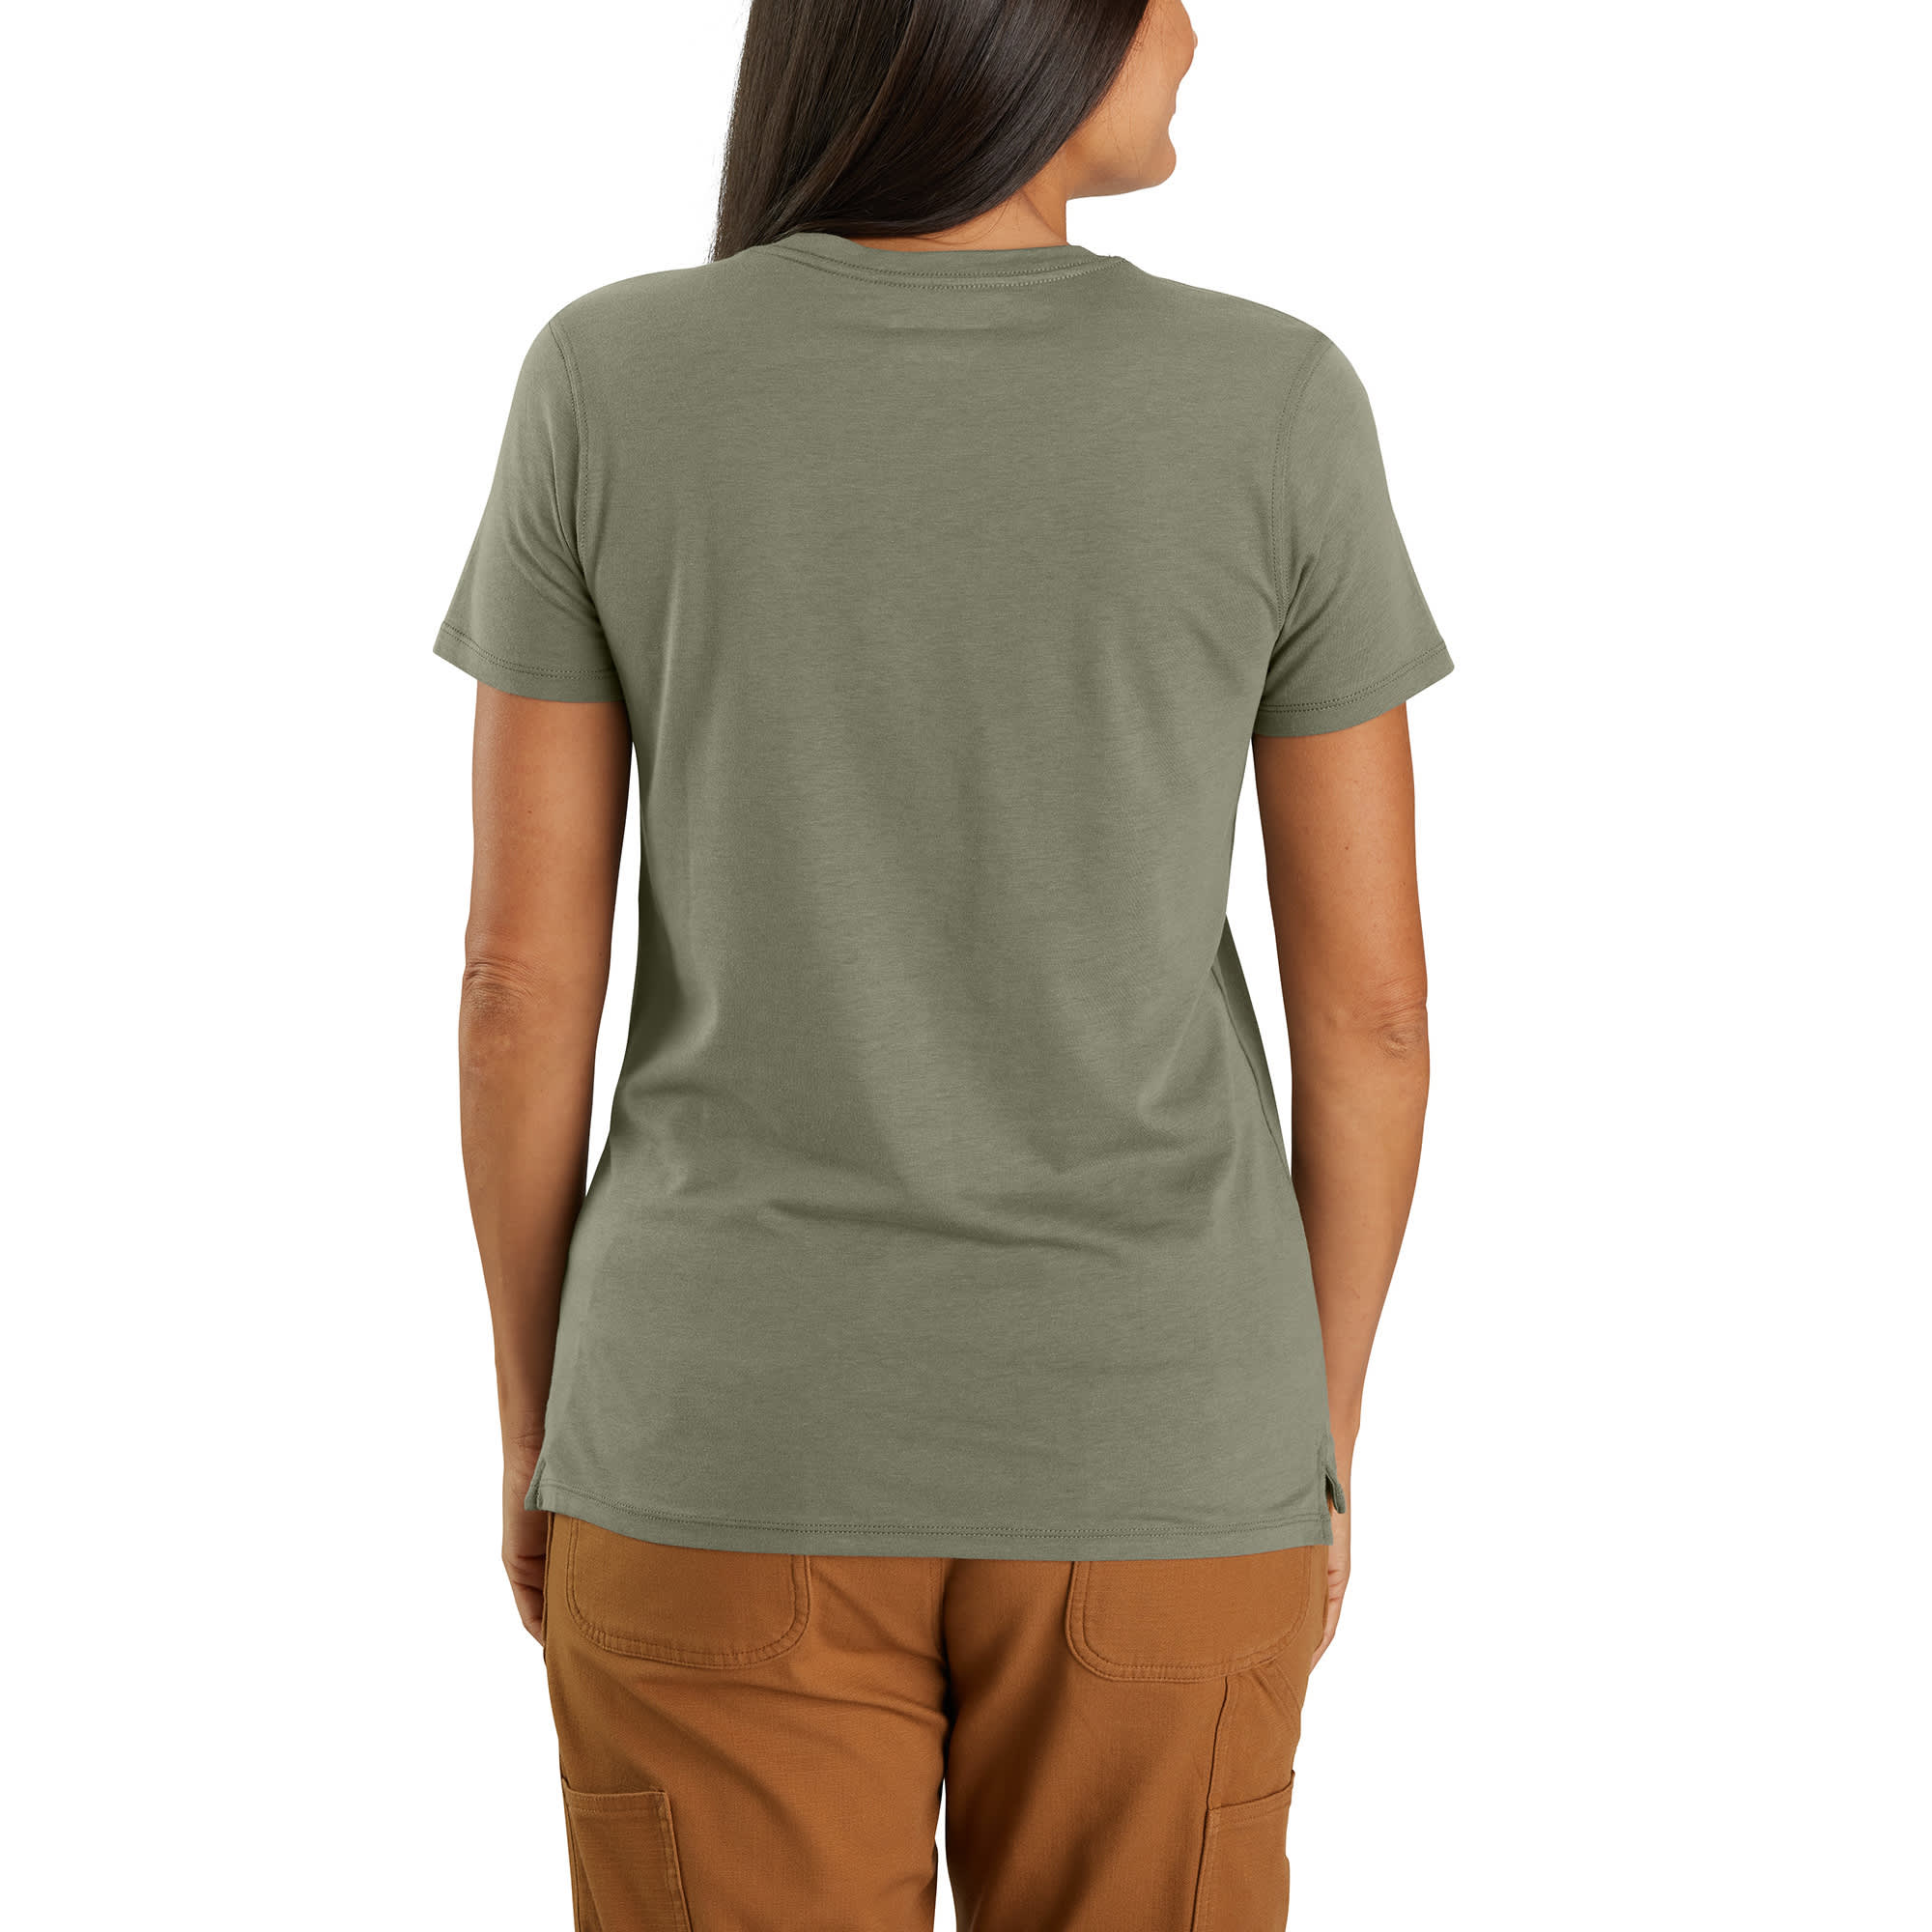 Carhartt® Women’s Graphic Short Sleeve T-Shirt